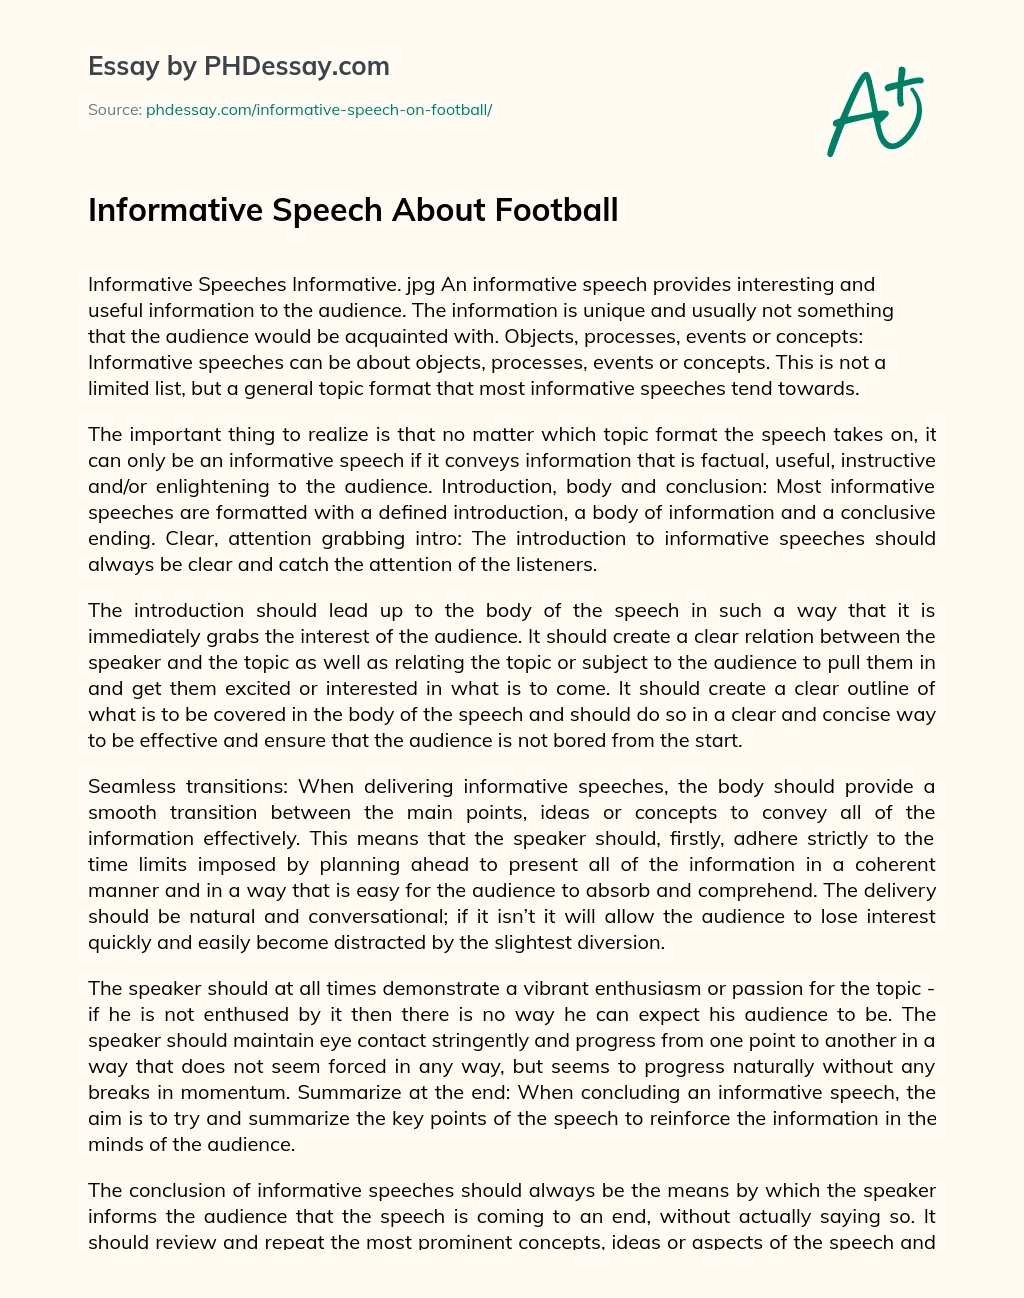 Informative Speech About Football essay